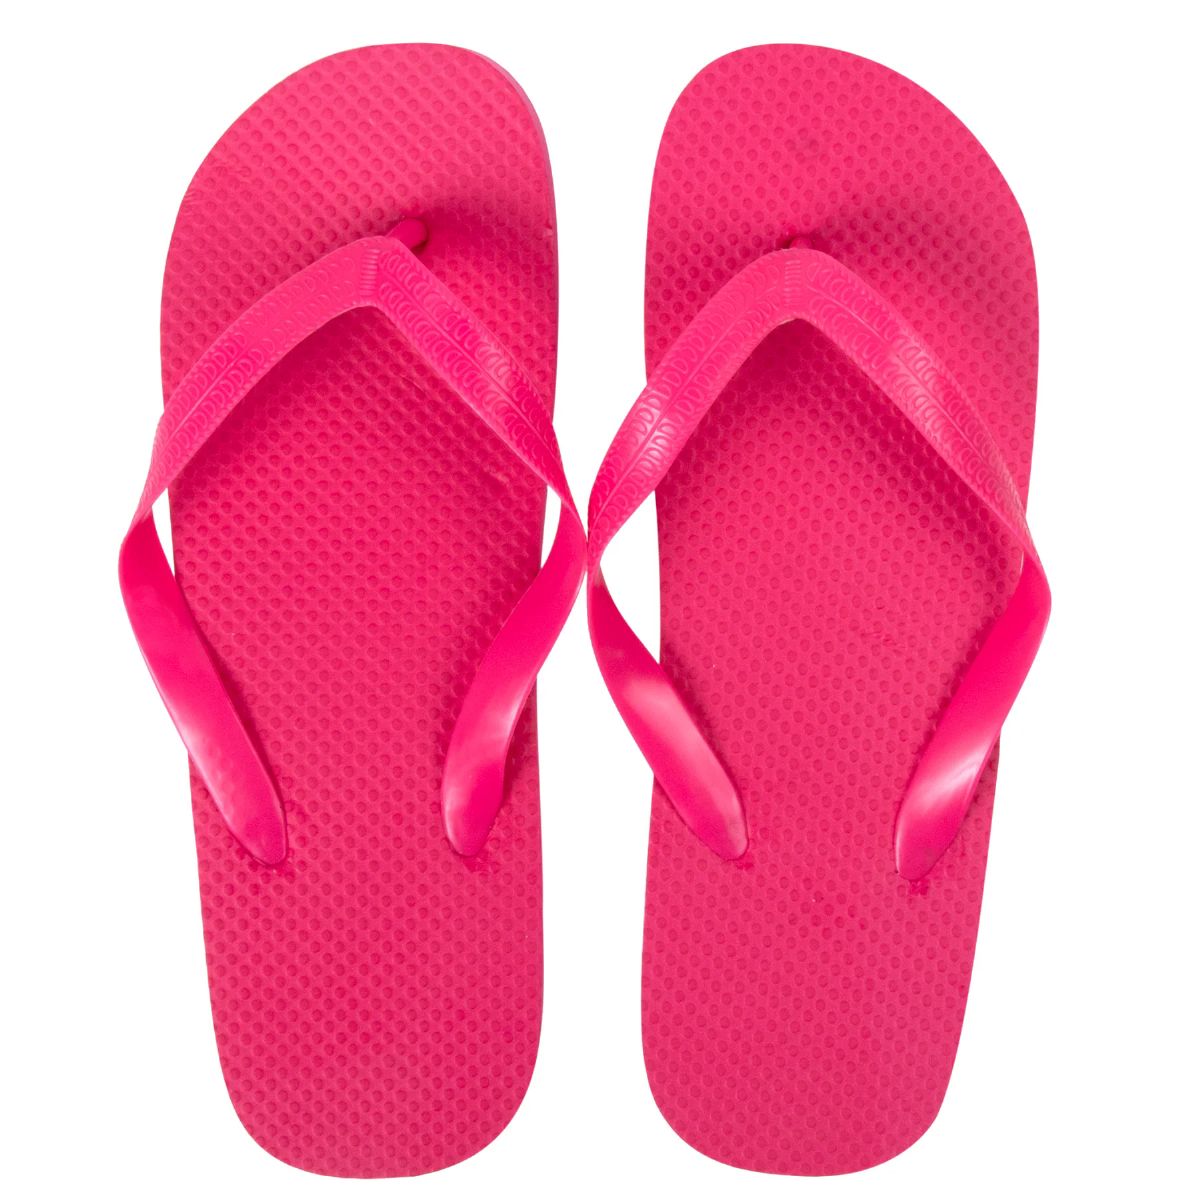 Wholesale Footwear Women's Flip Flops - Hot Pink